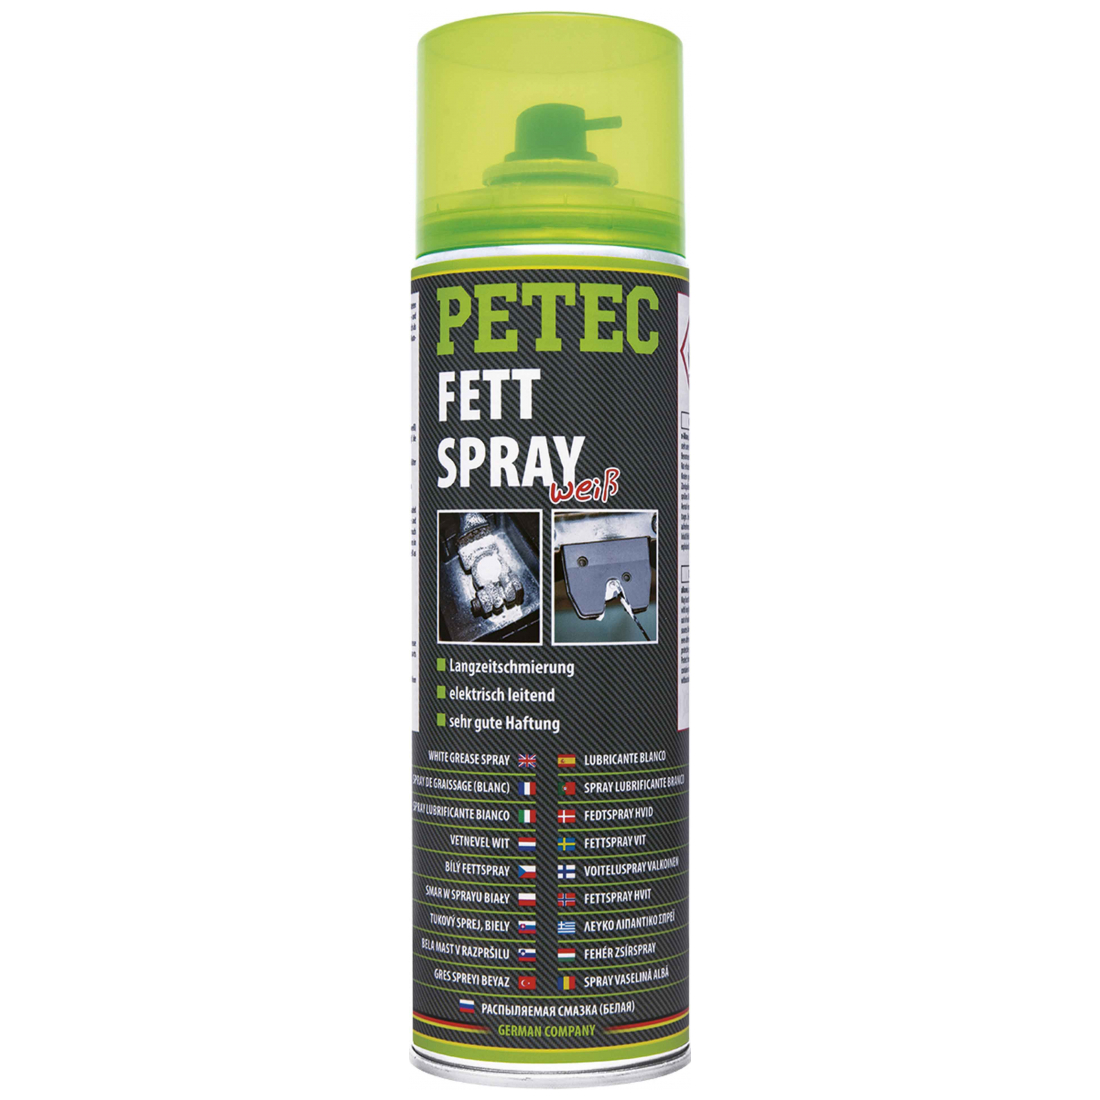 Petec Fettspray weiss 500 ml 70250